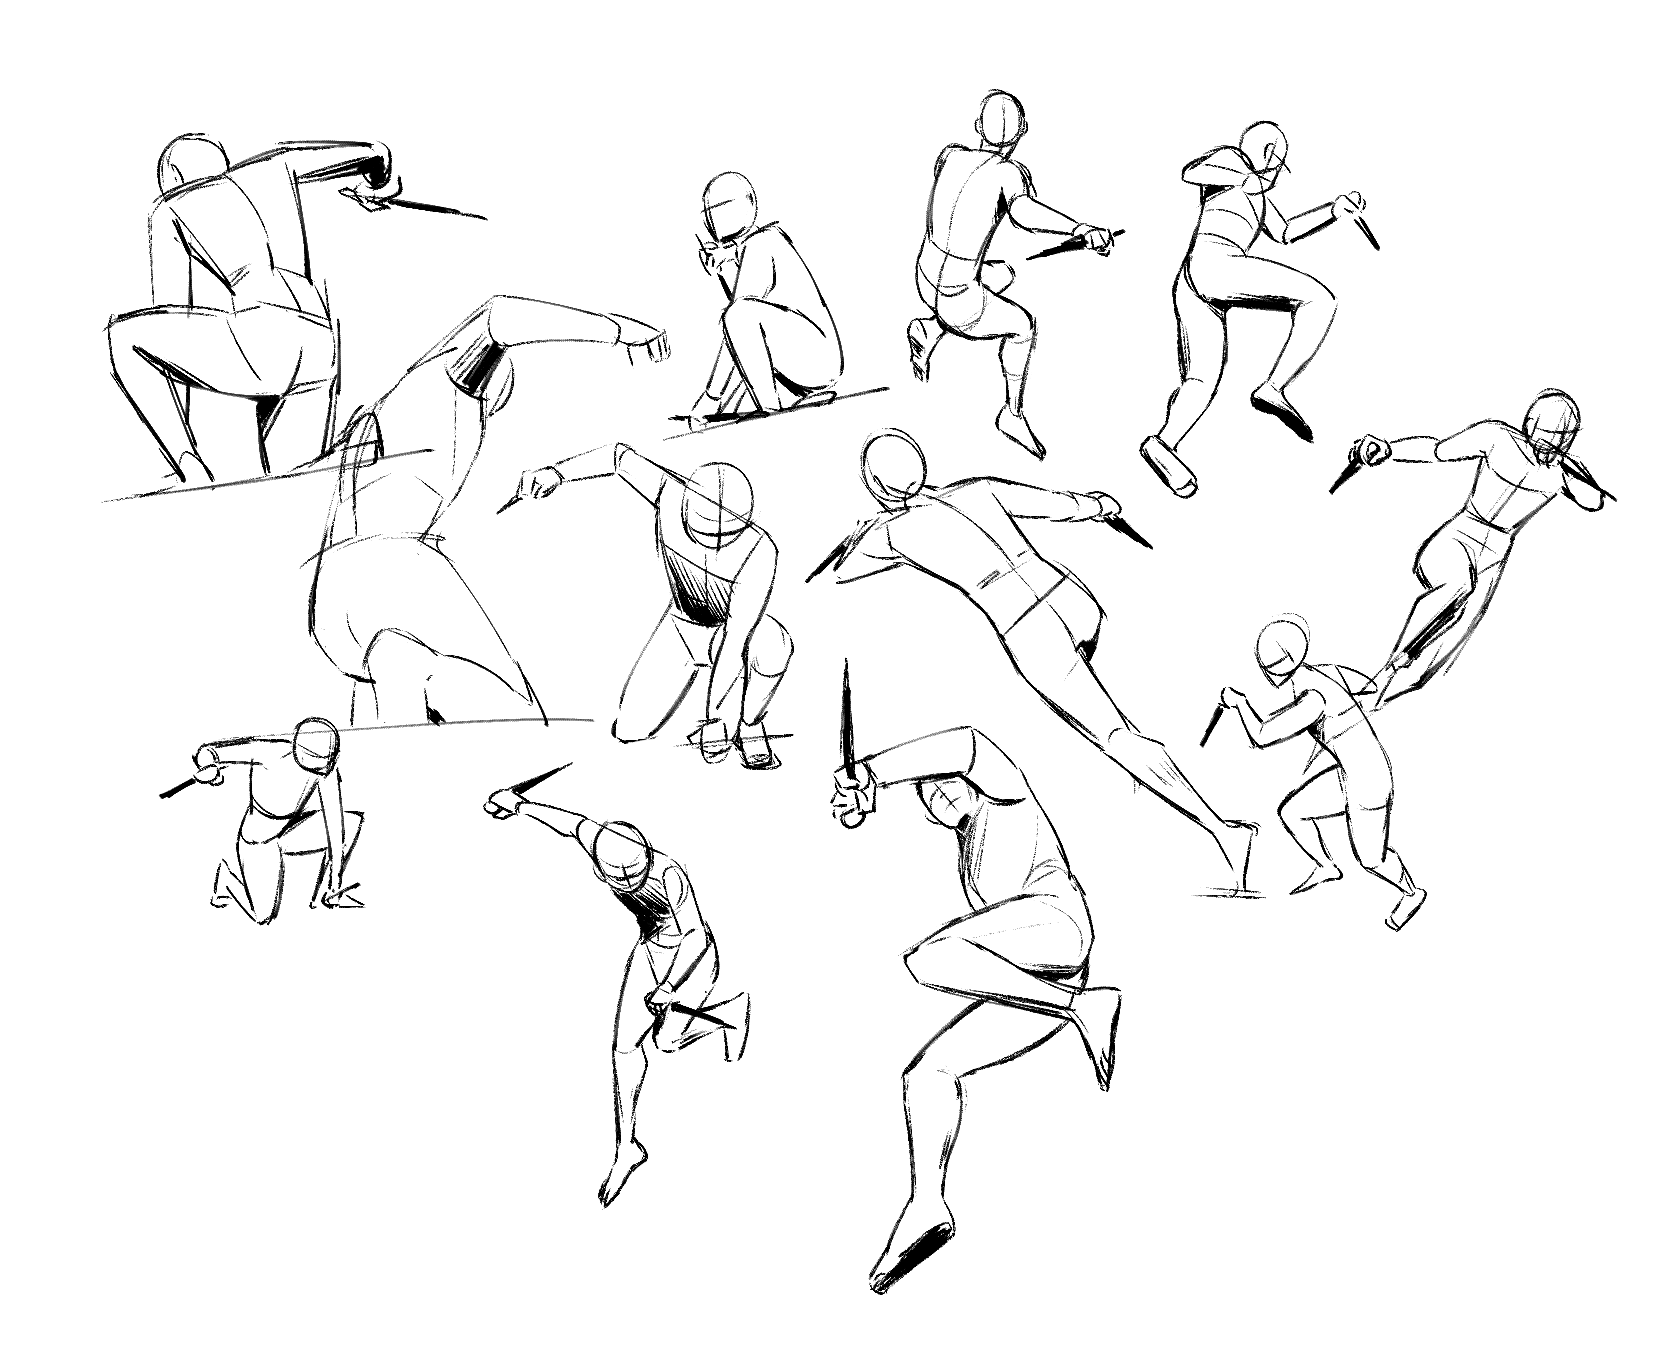 Gesture drawings.